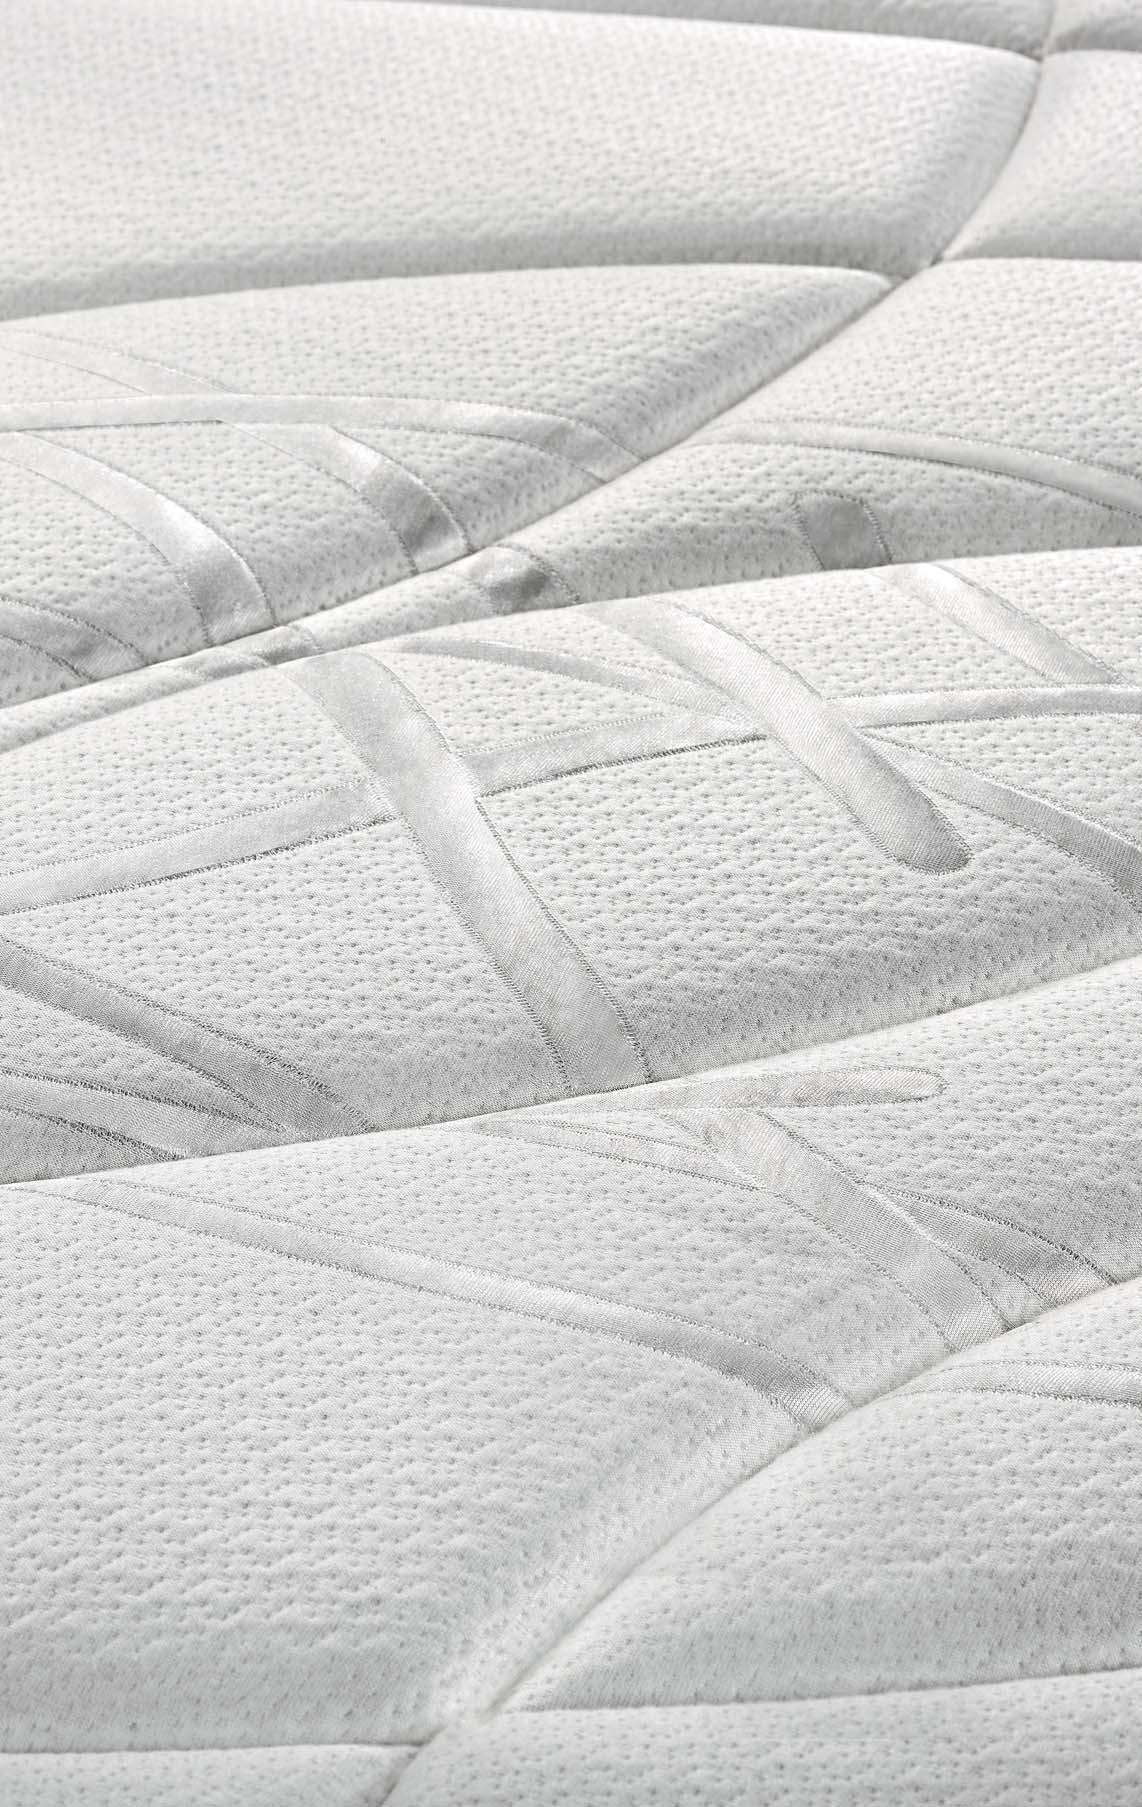 del colchón Confortec Tejido Drycare transpirable Acolchado continuo Confort suave Altura 2 +